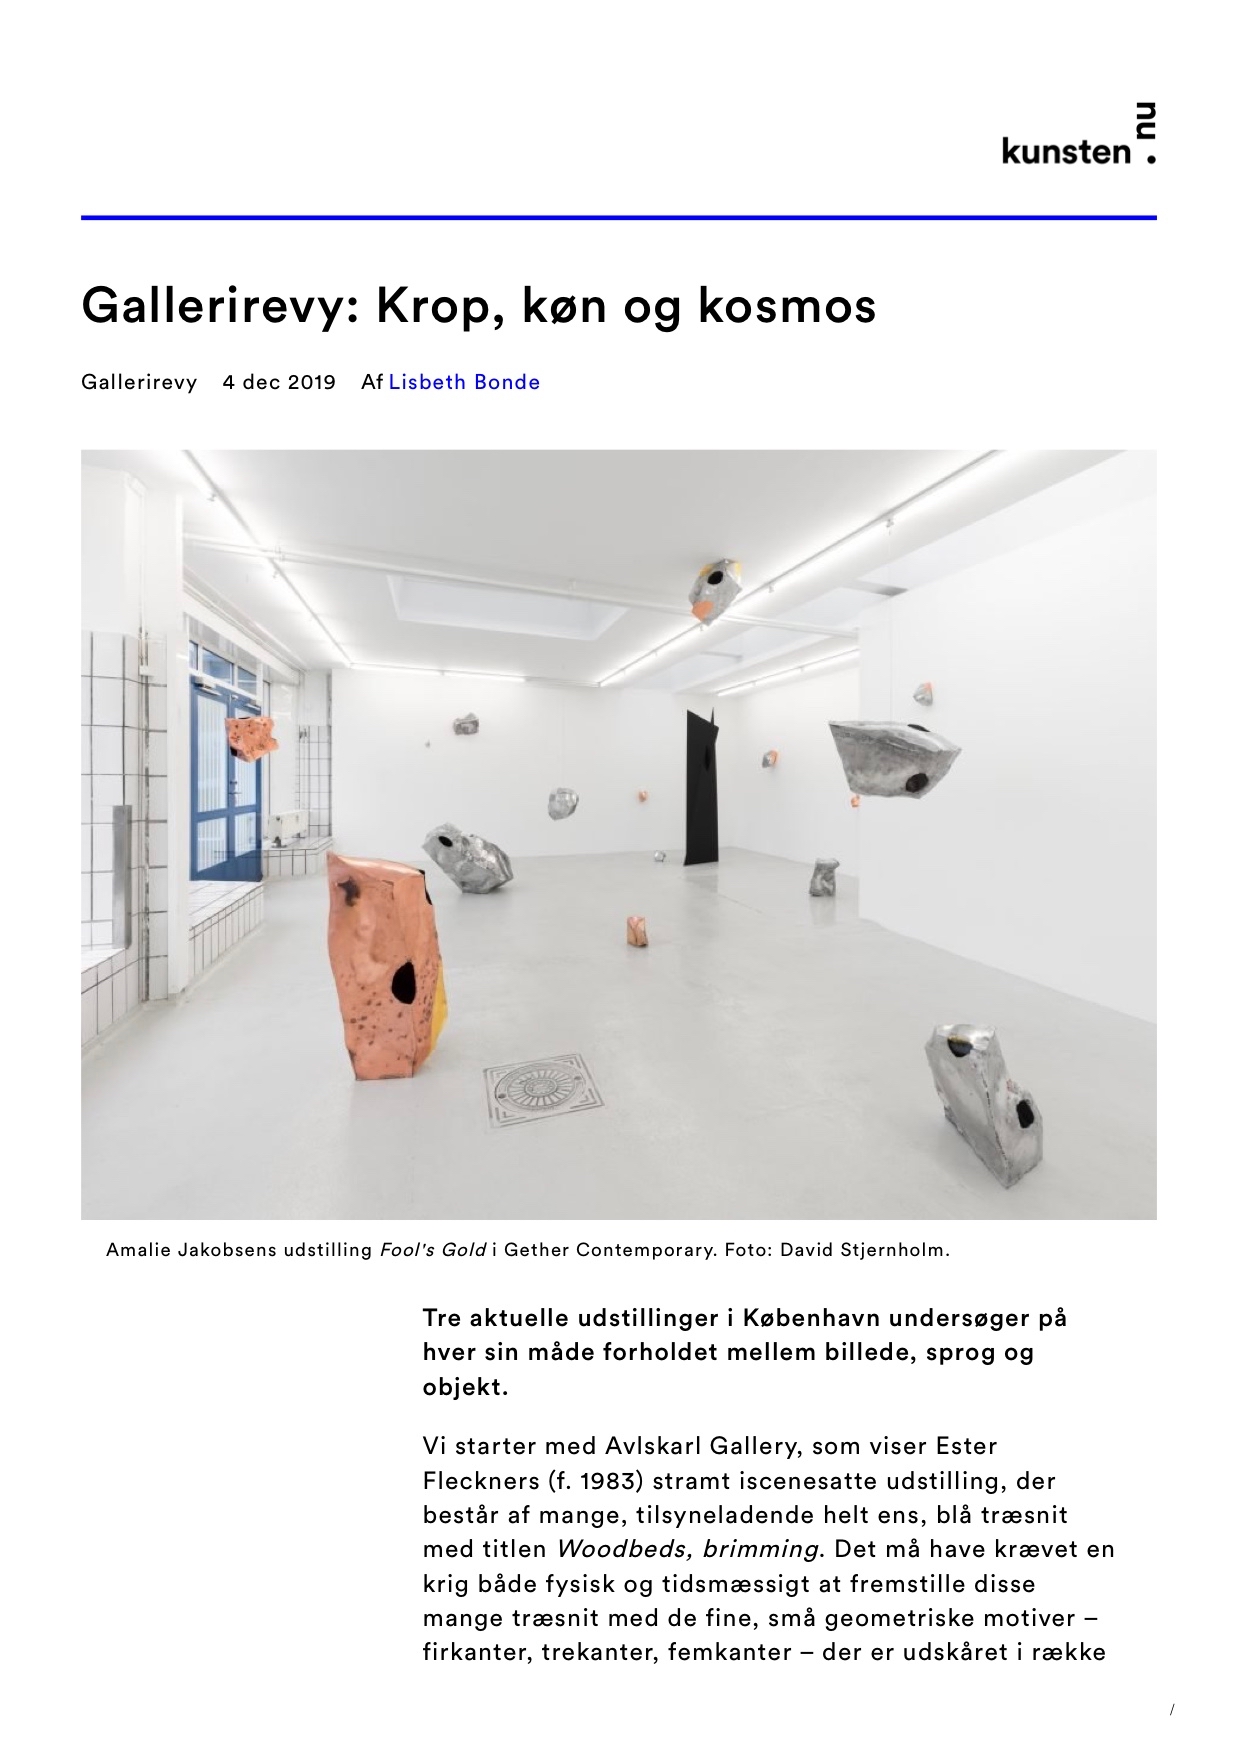 Kunsten.nu: Krop, Køn og Kosmos, 2019